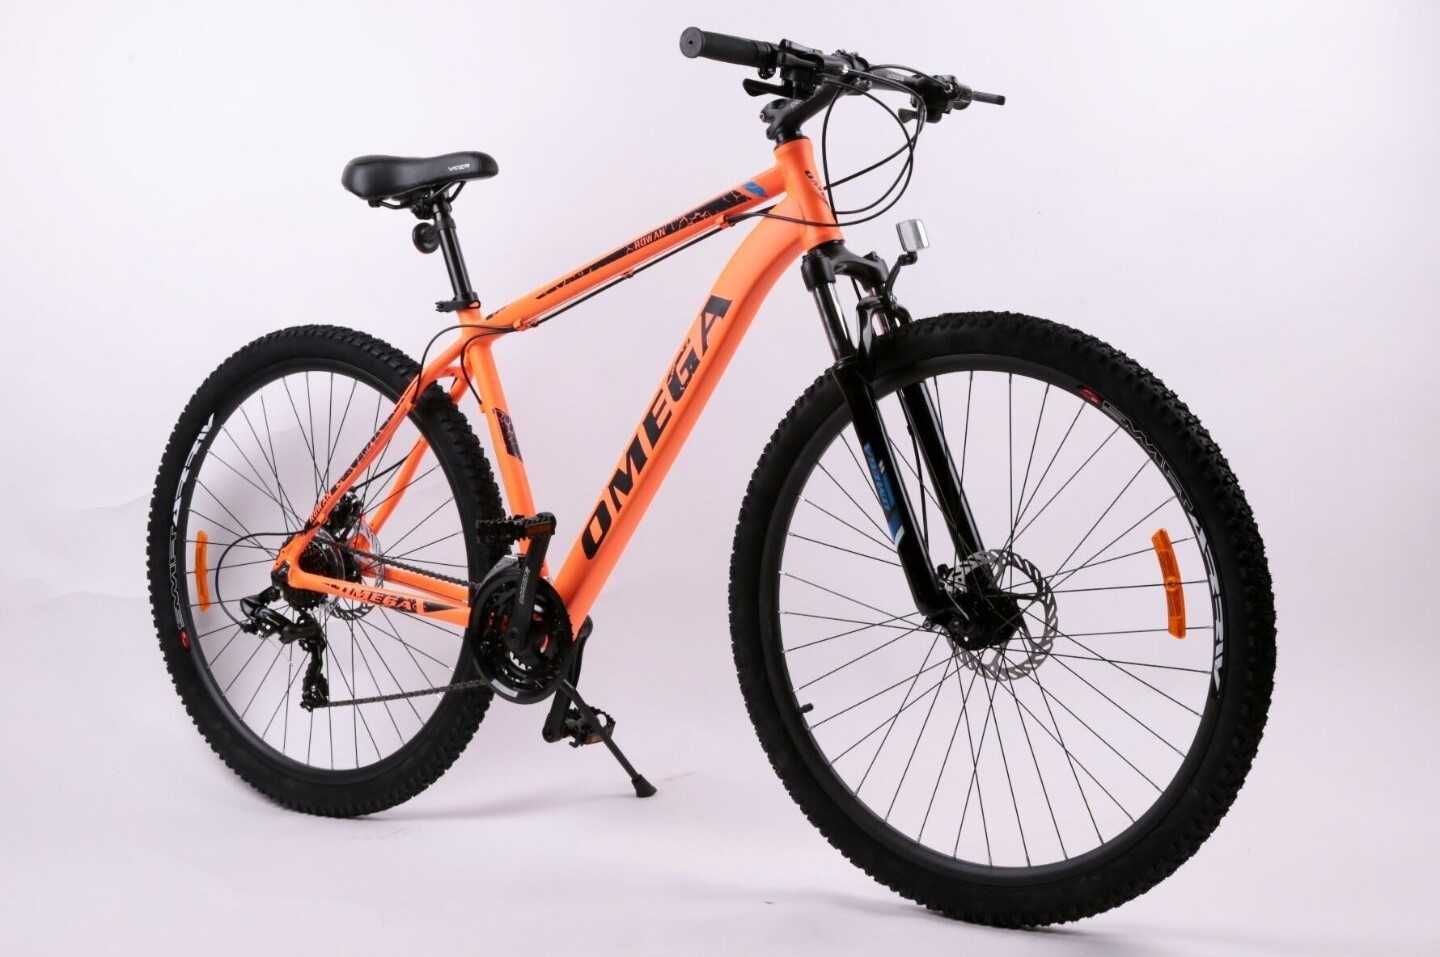 Bicicletă nouă 29" Rowan Omega, portocaliu-negru